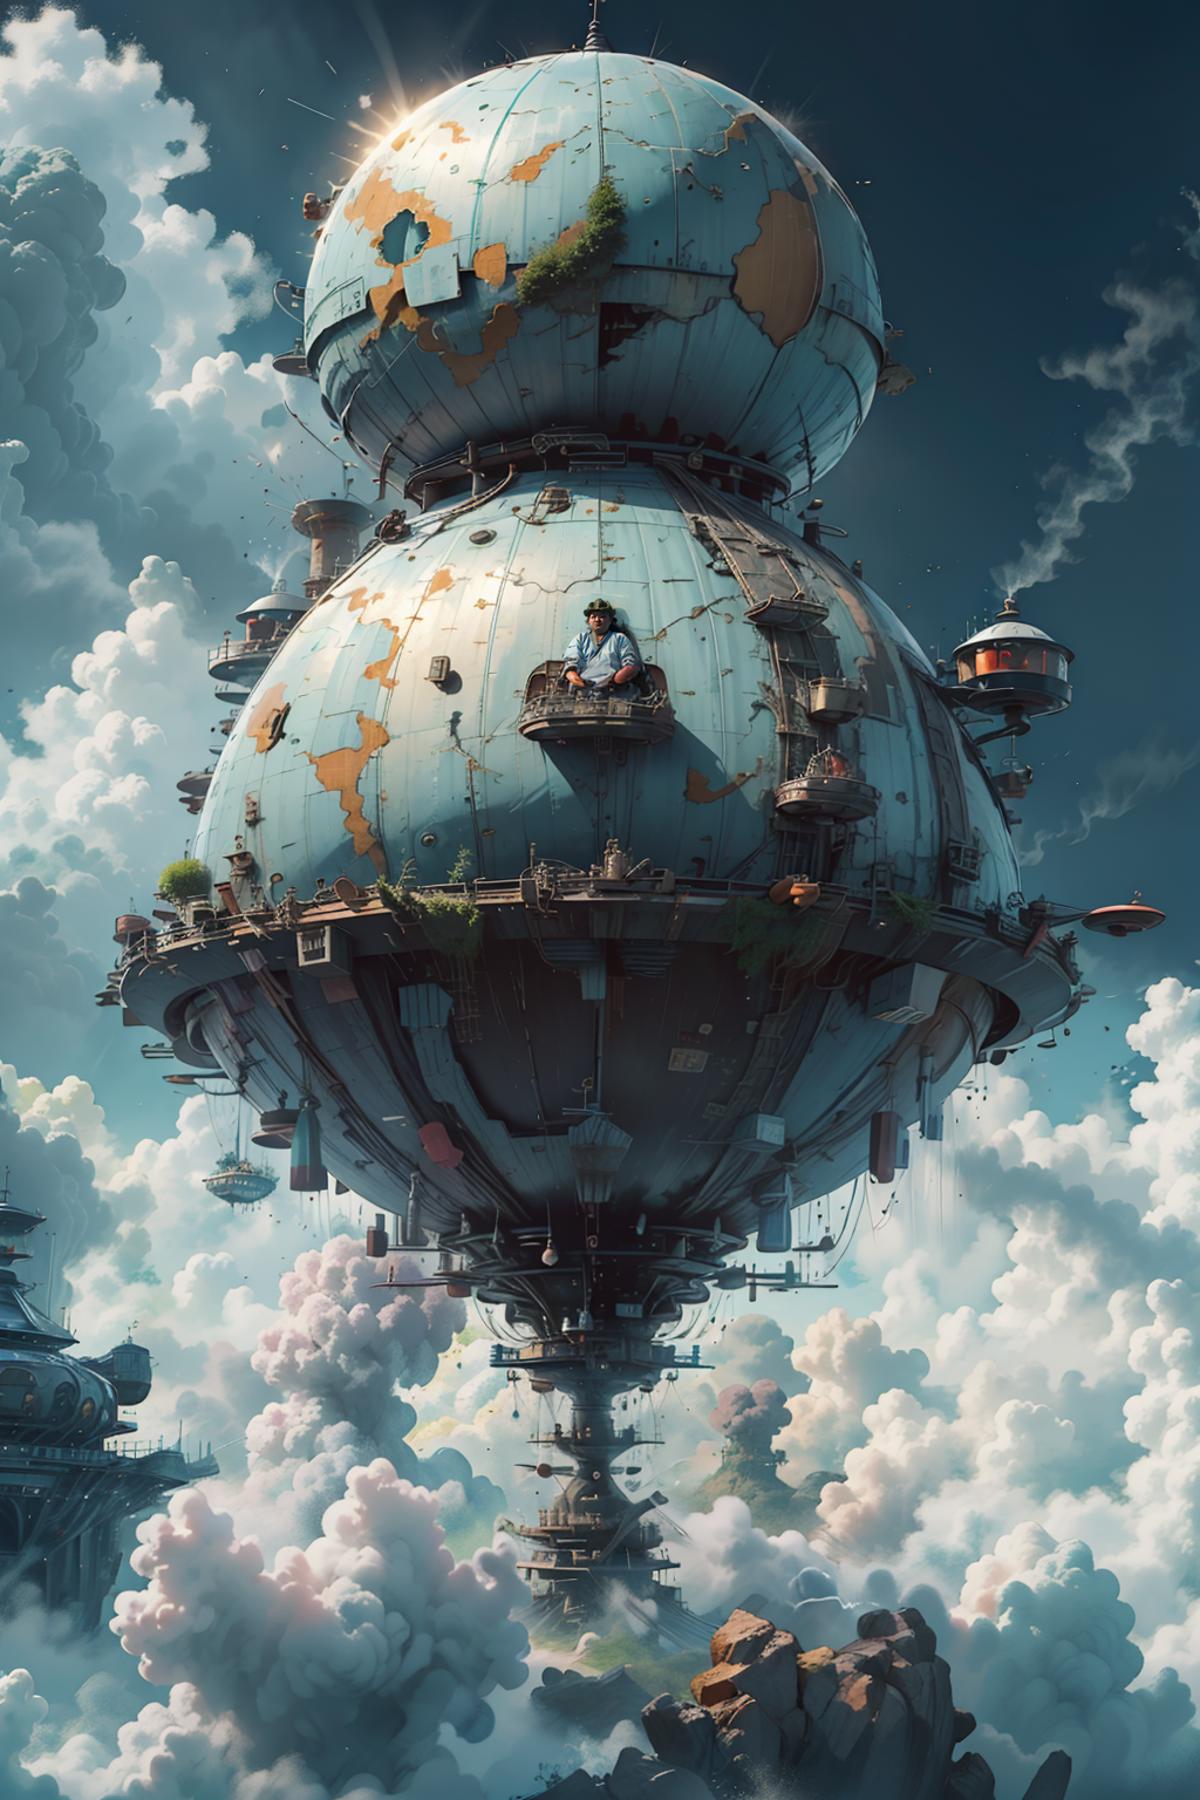  巨大飞空艇  Giant airship image by Neo_cute